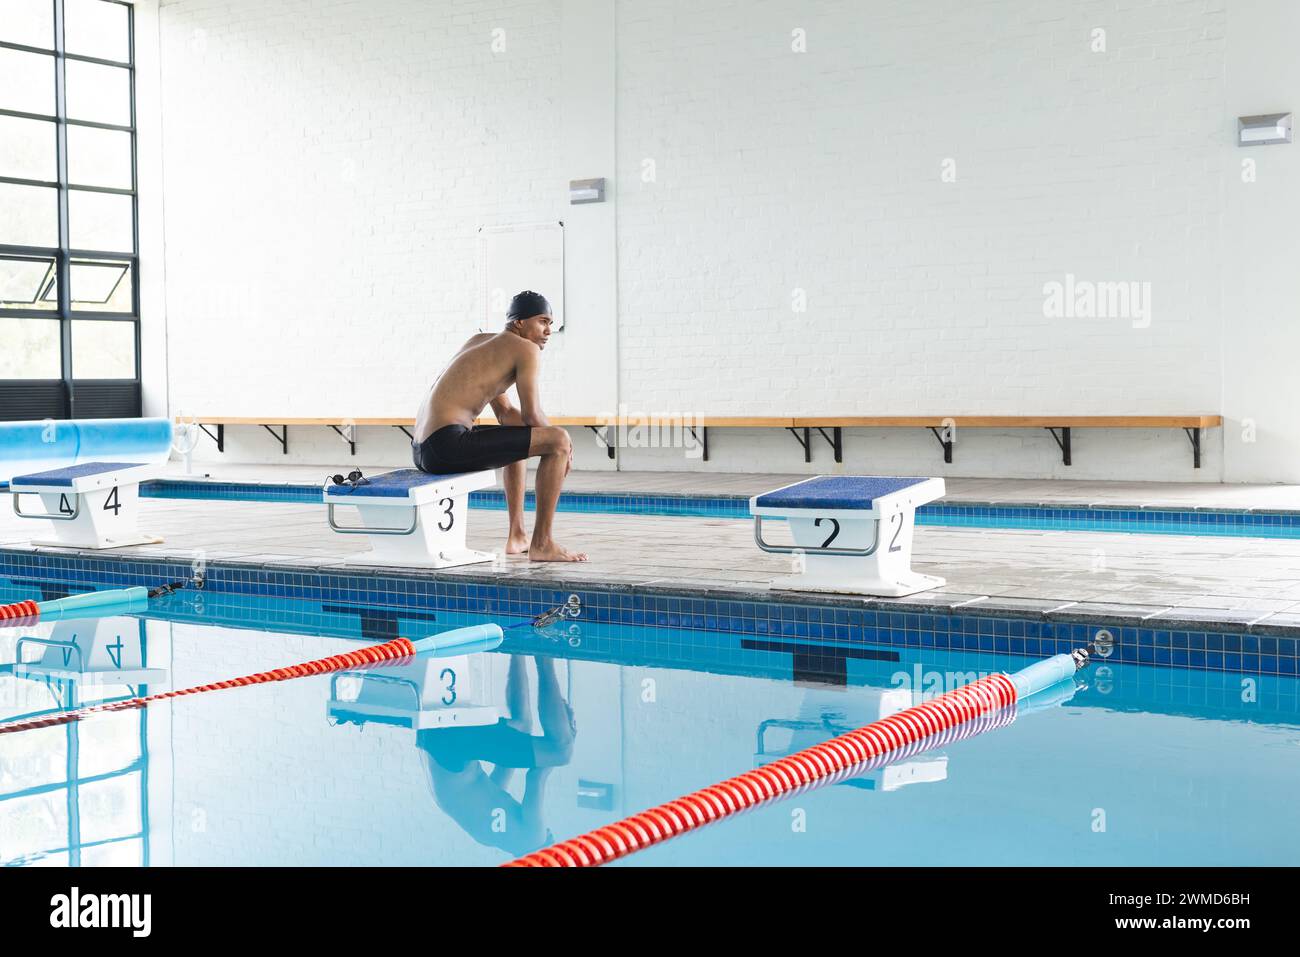 Junge männliche Sportlerinnen bereiten sich auf das Tauchen in einem Hallenbad mit Kopierraum vor Stockfoto